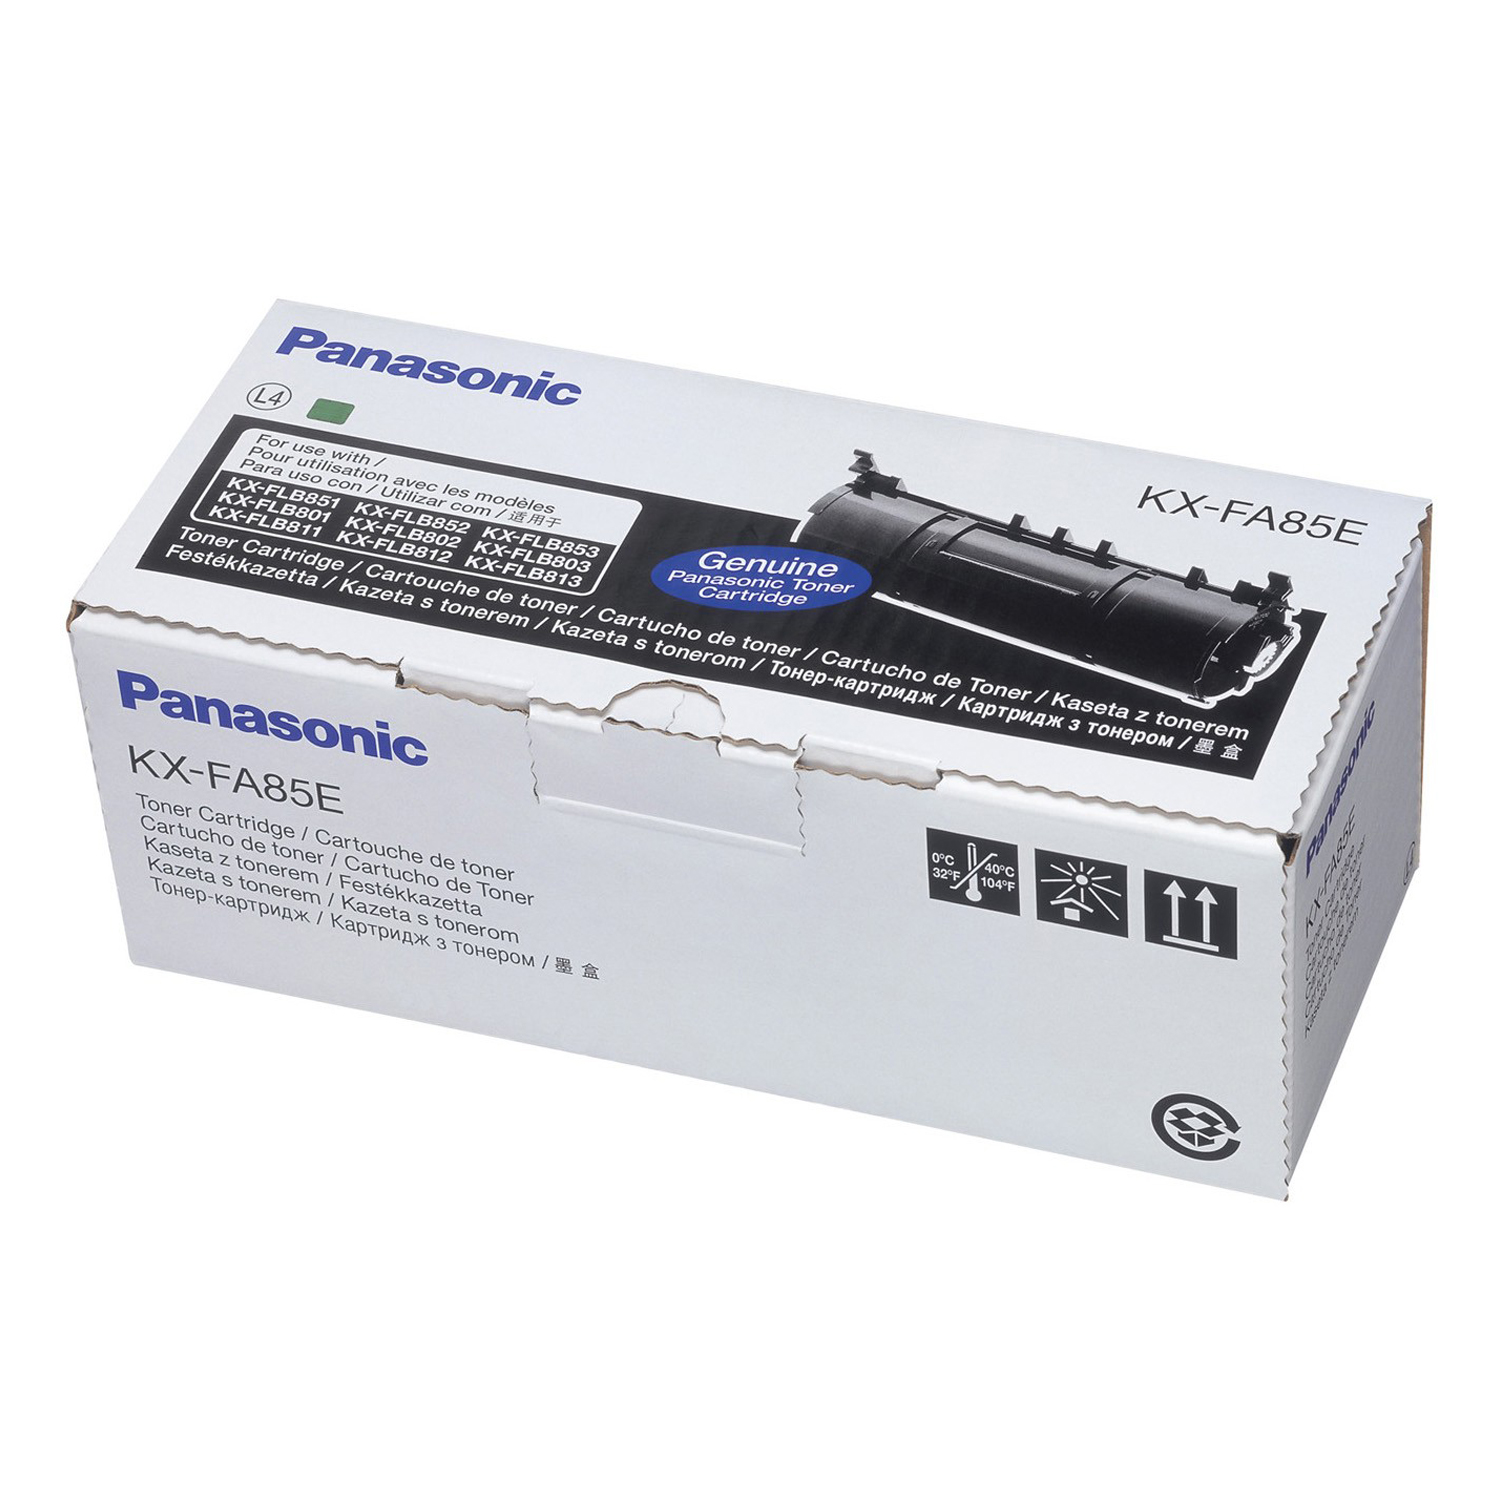 Картриджи для принтеров panasonic купить. Картридж Panasonic KX-fa85a. Panasonic KX-flb813. Картридж Panasonic DQ-tcd025a7. Panasonic KX flb813 картридж.